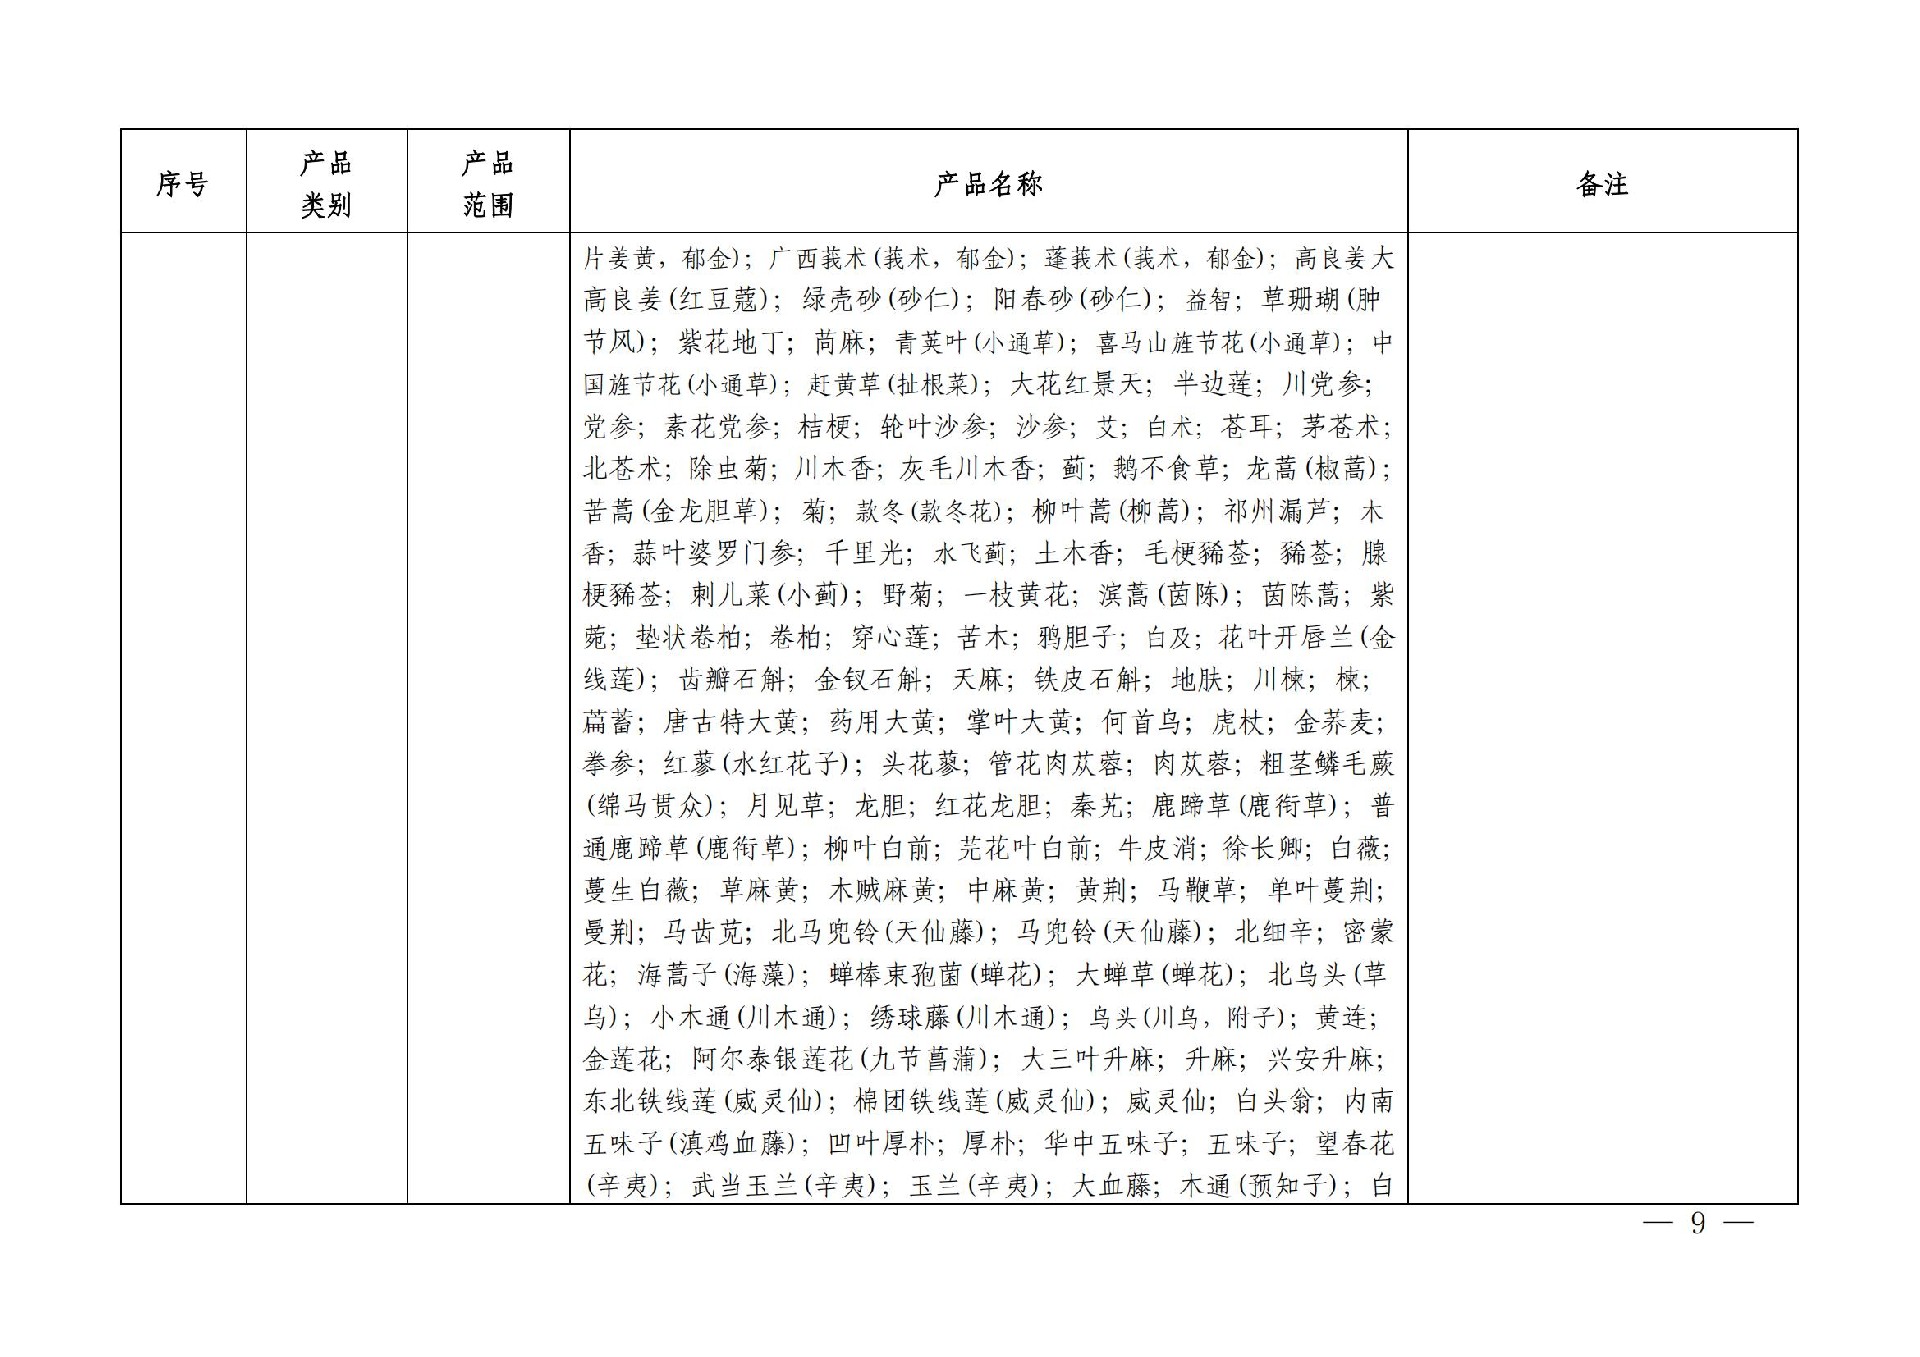 有机产品认证目录【认监委2019年第22号公告】(1)_08.jpg